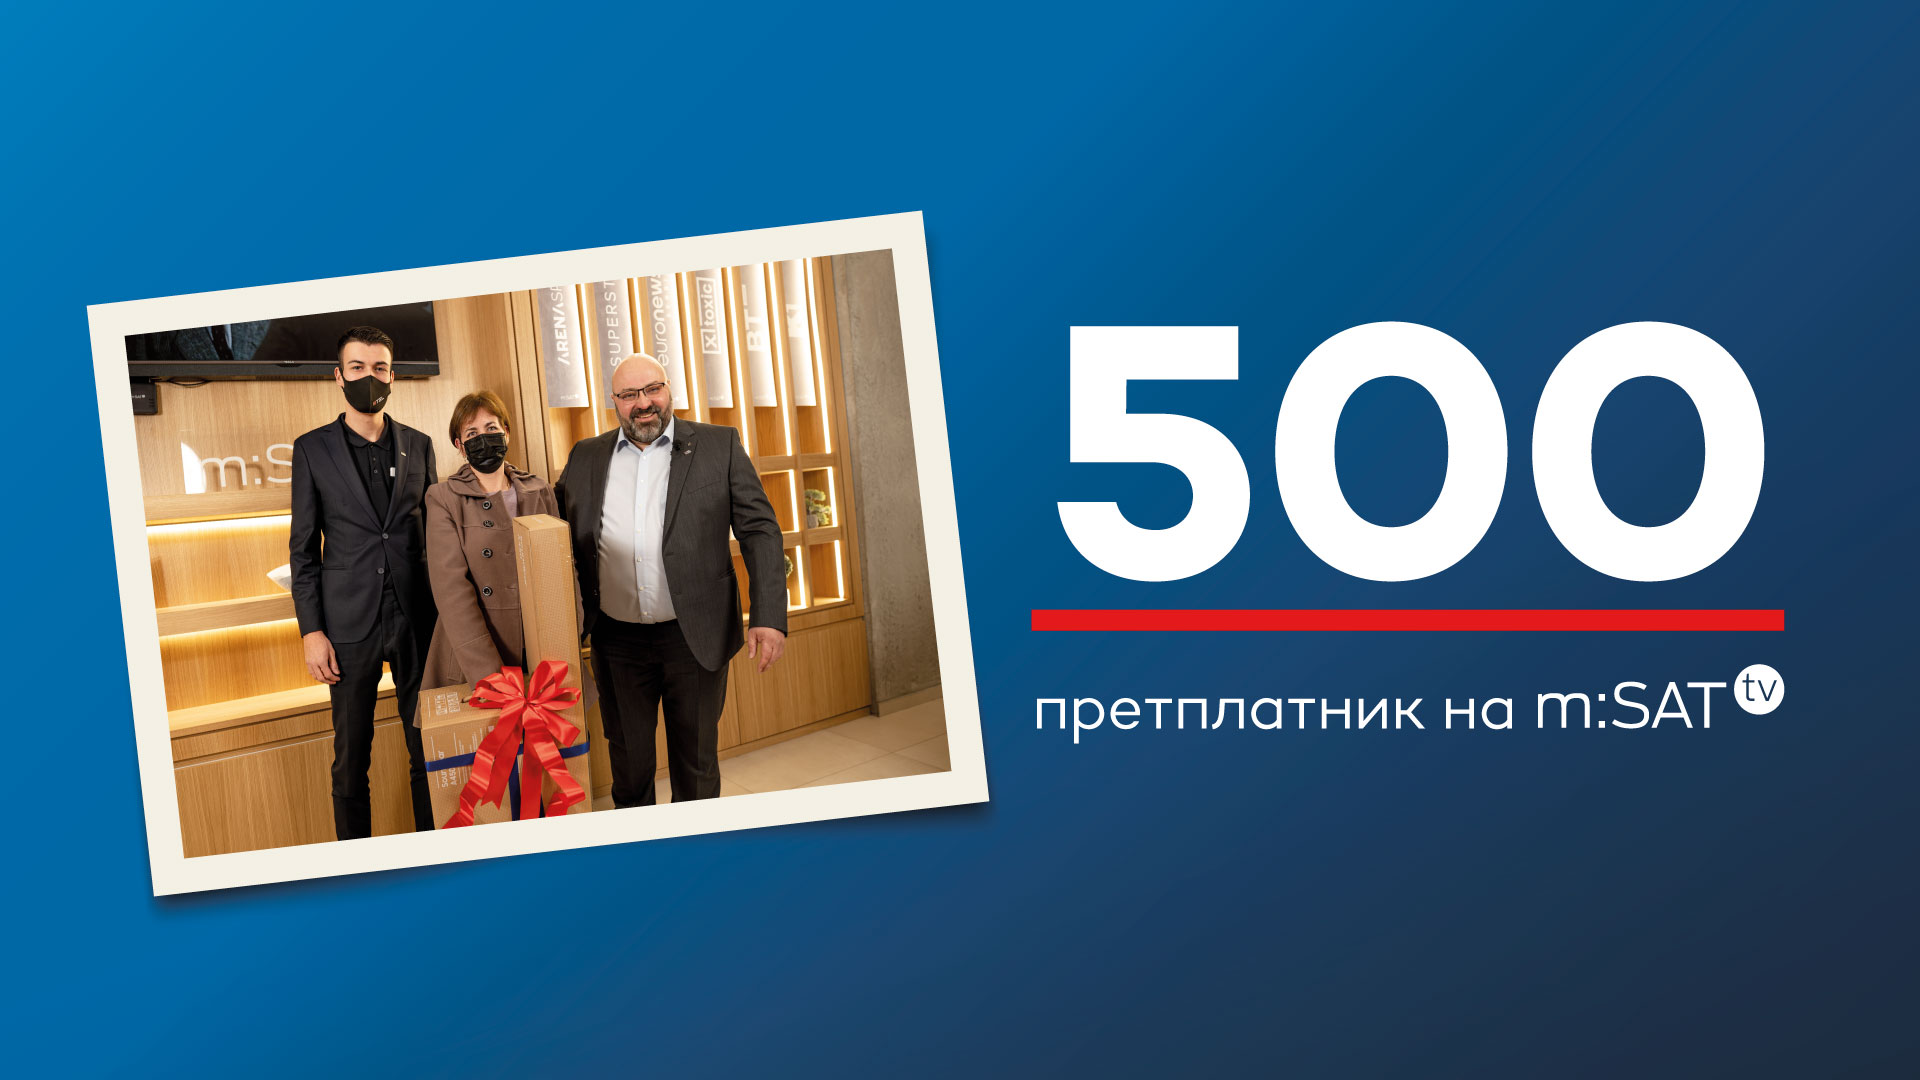 500-ти претплатник на mSAT TV во Македонија